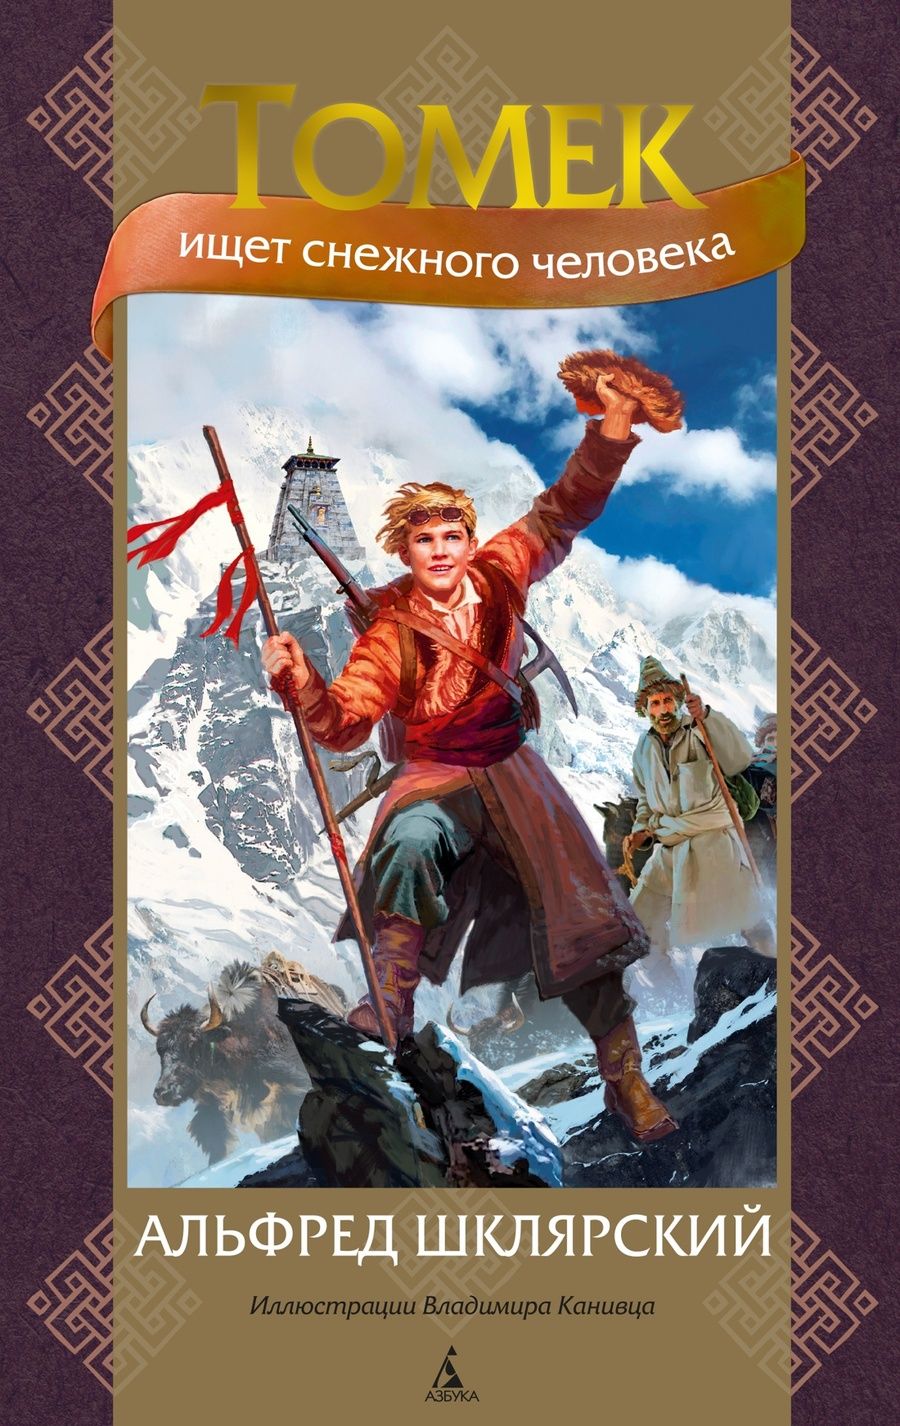 Обложка книги "Шклярский: Томек ищет снежного человека"